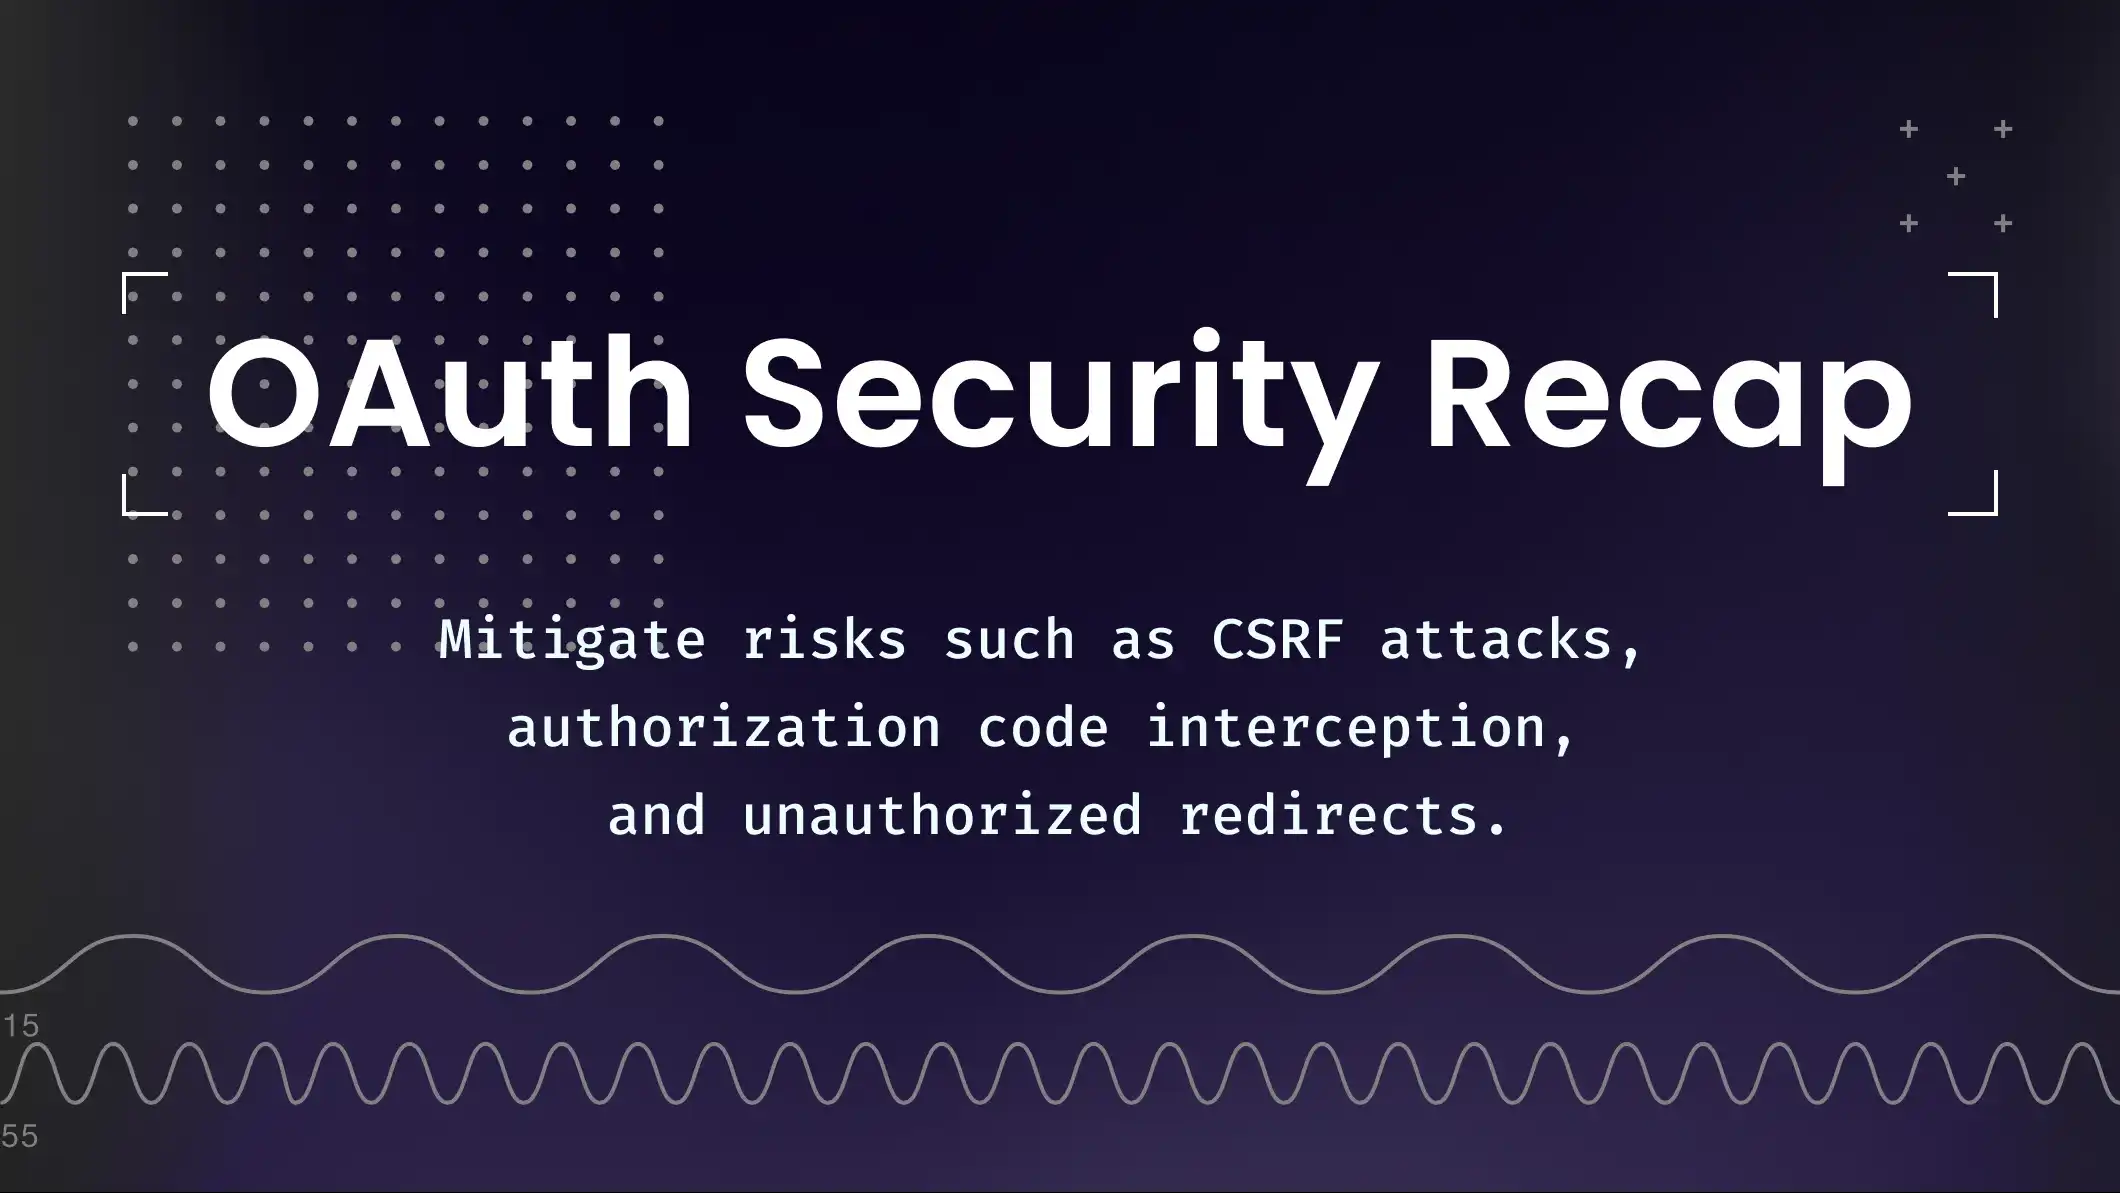 A brief OAuth security recap